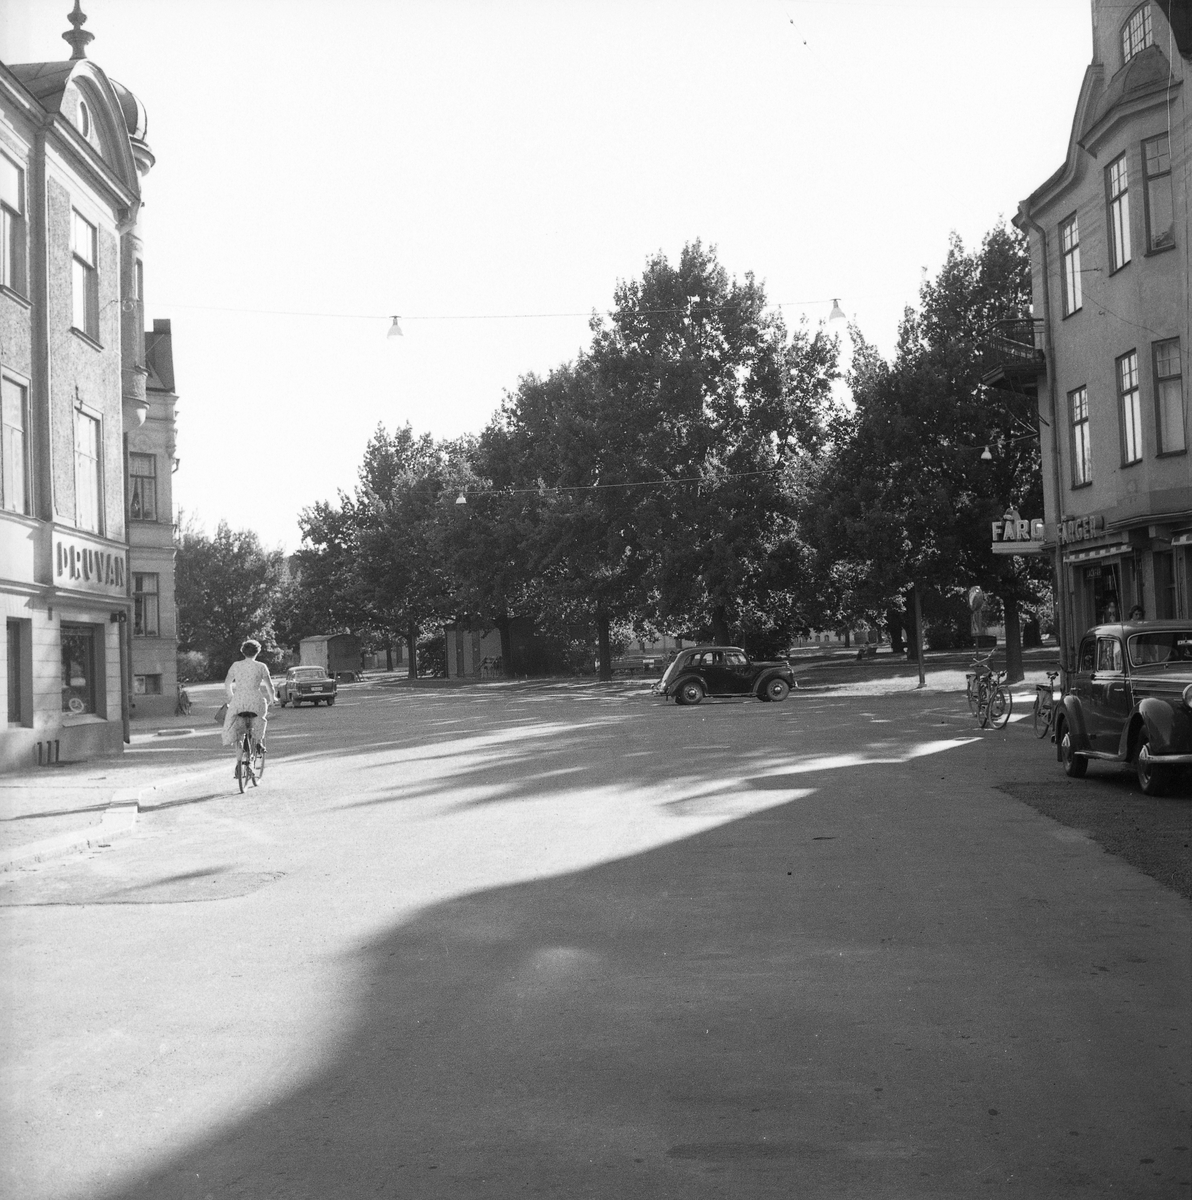 Mordbilens väg kartlagd.  
8 juli 1959. 
Ringgatan, närmast korsningen med Ekersgatan.